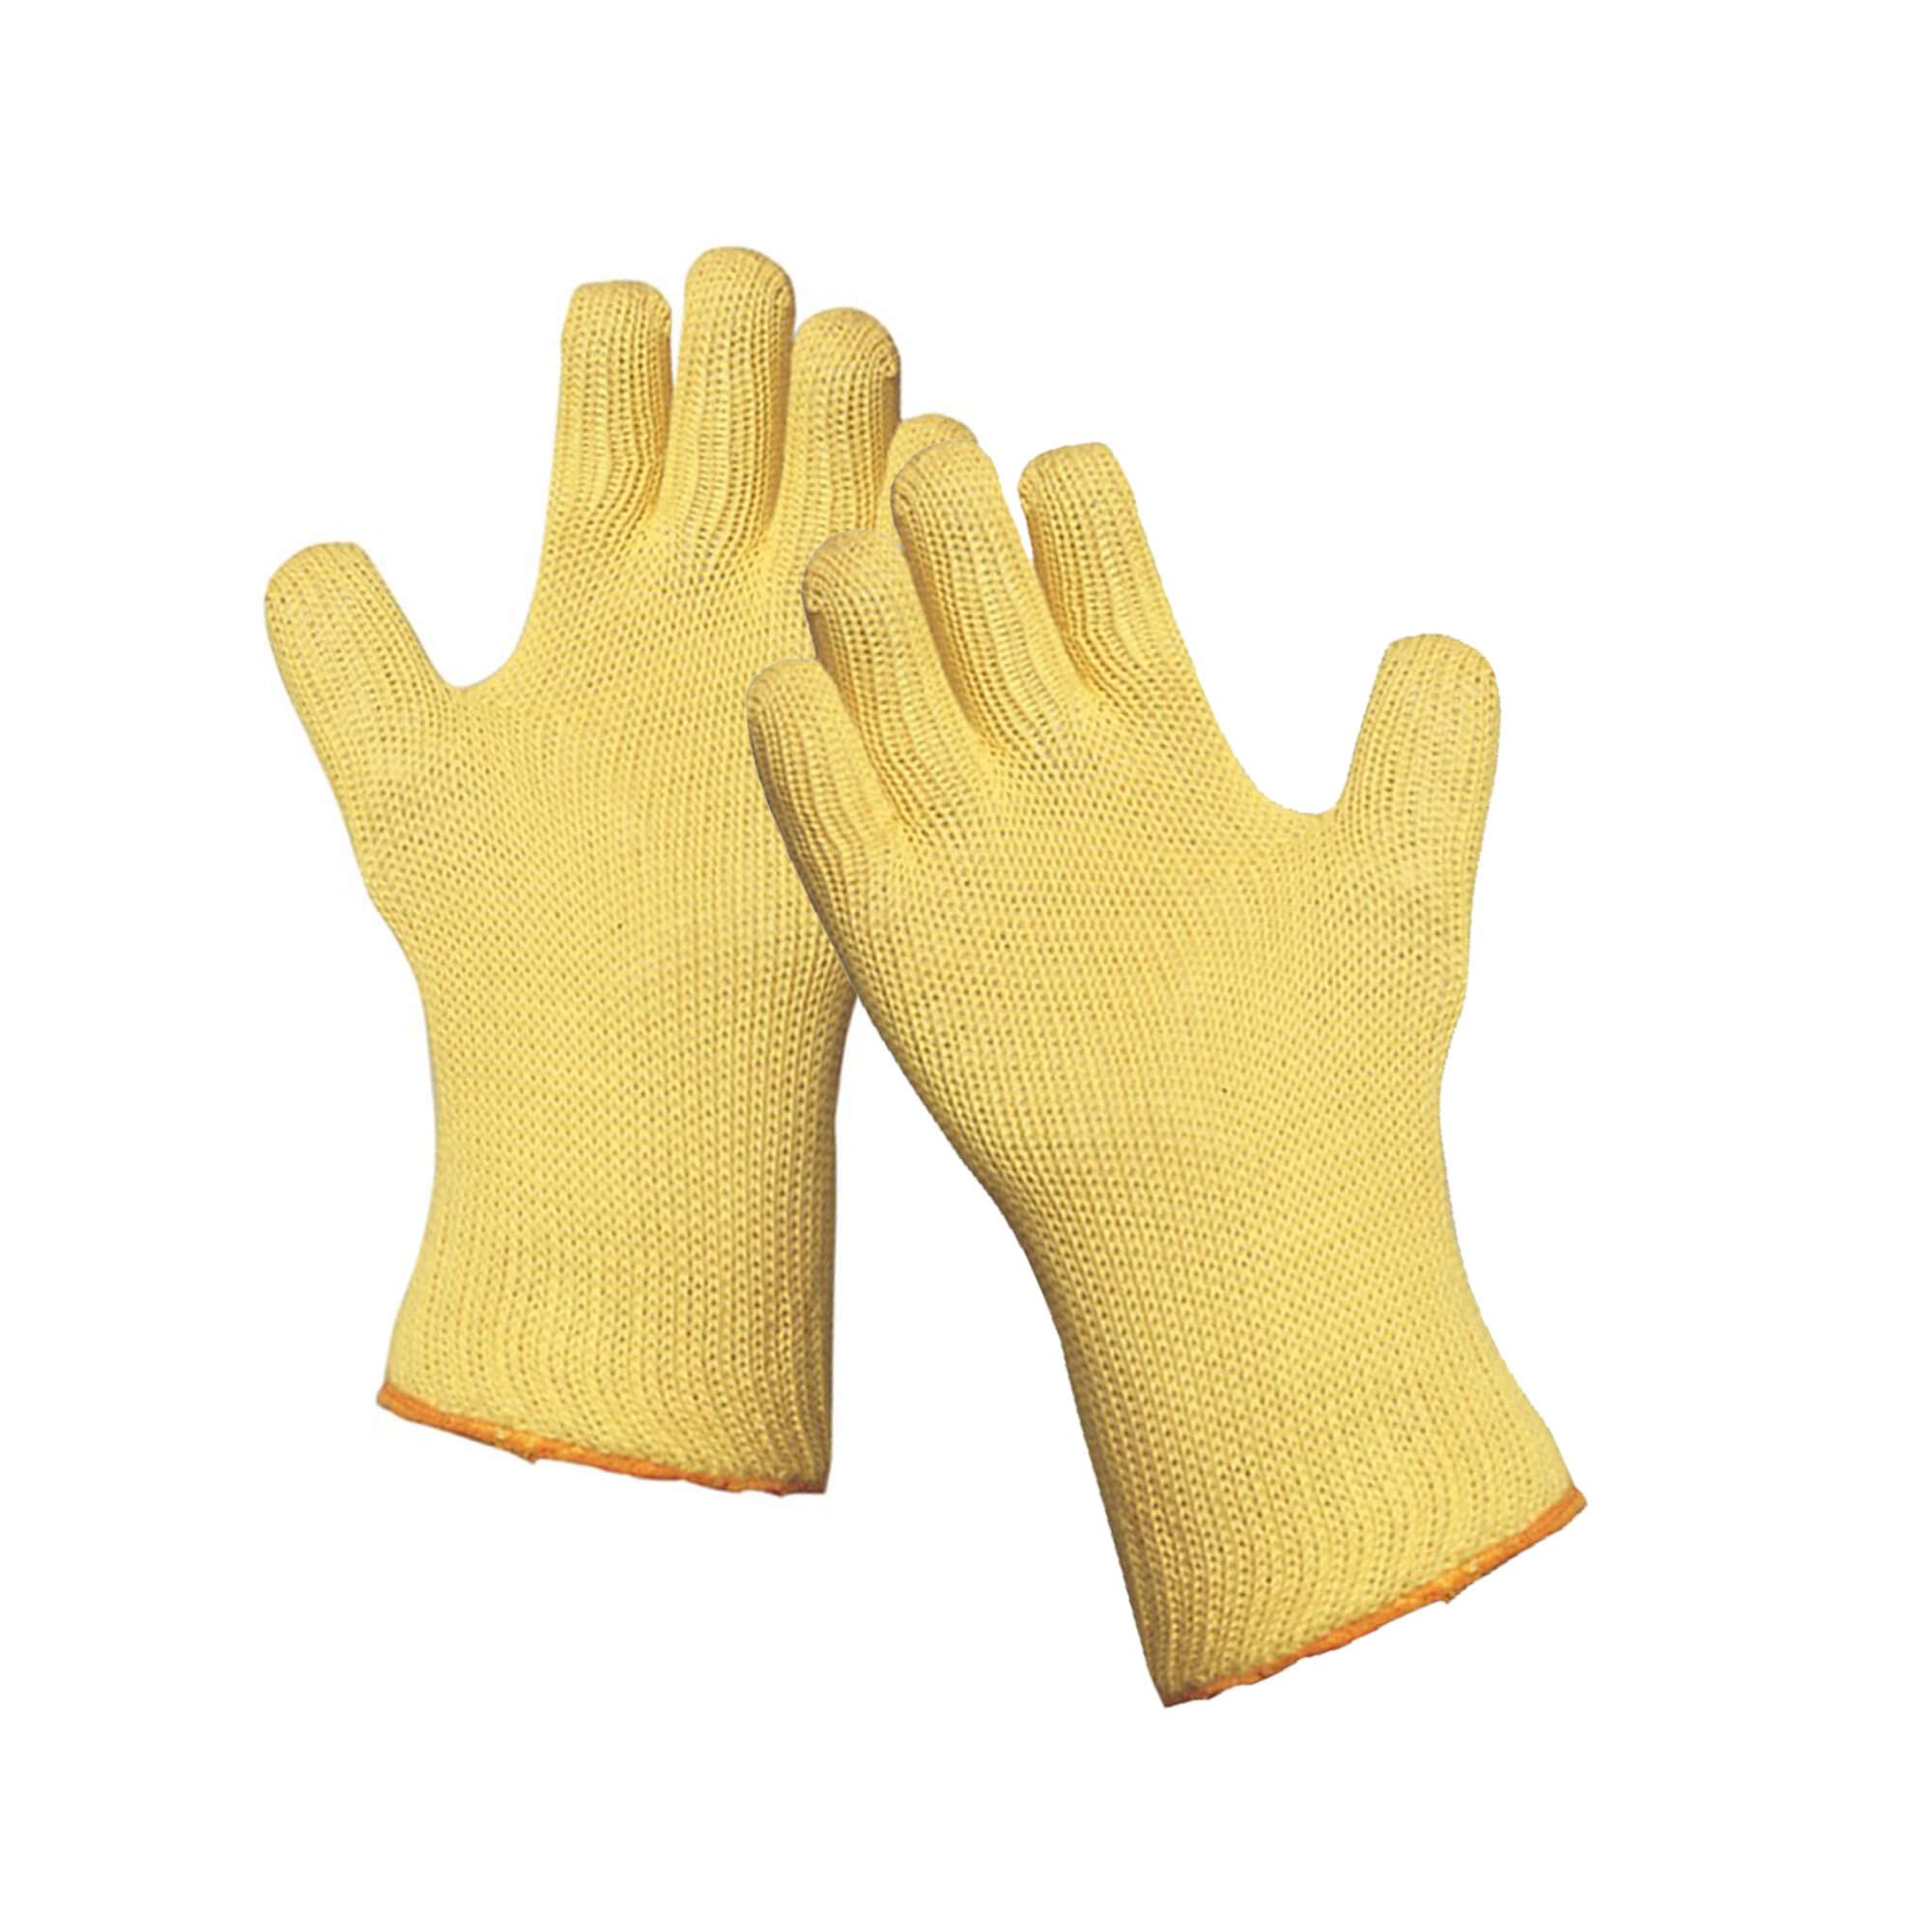 Protective work gloves Kevlar, 35 cm